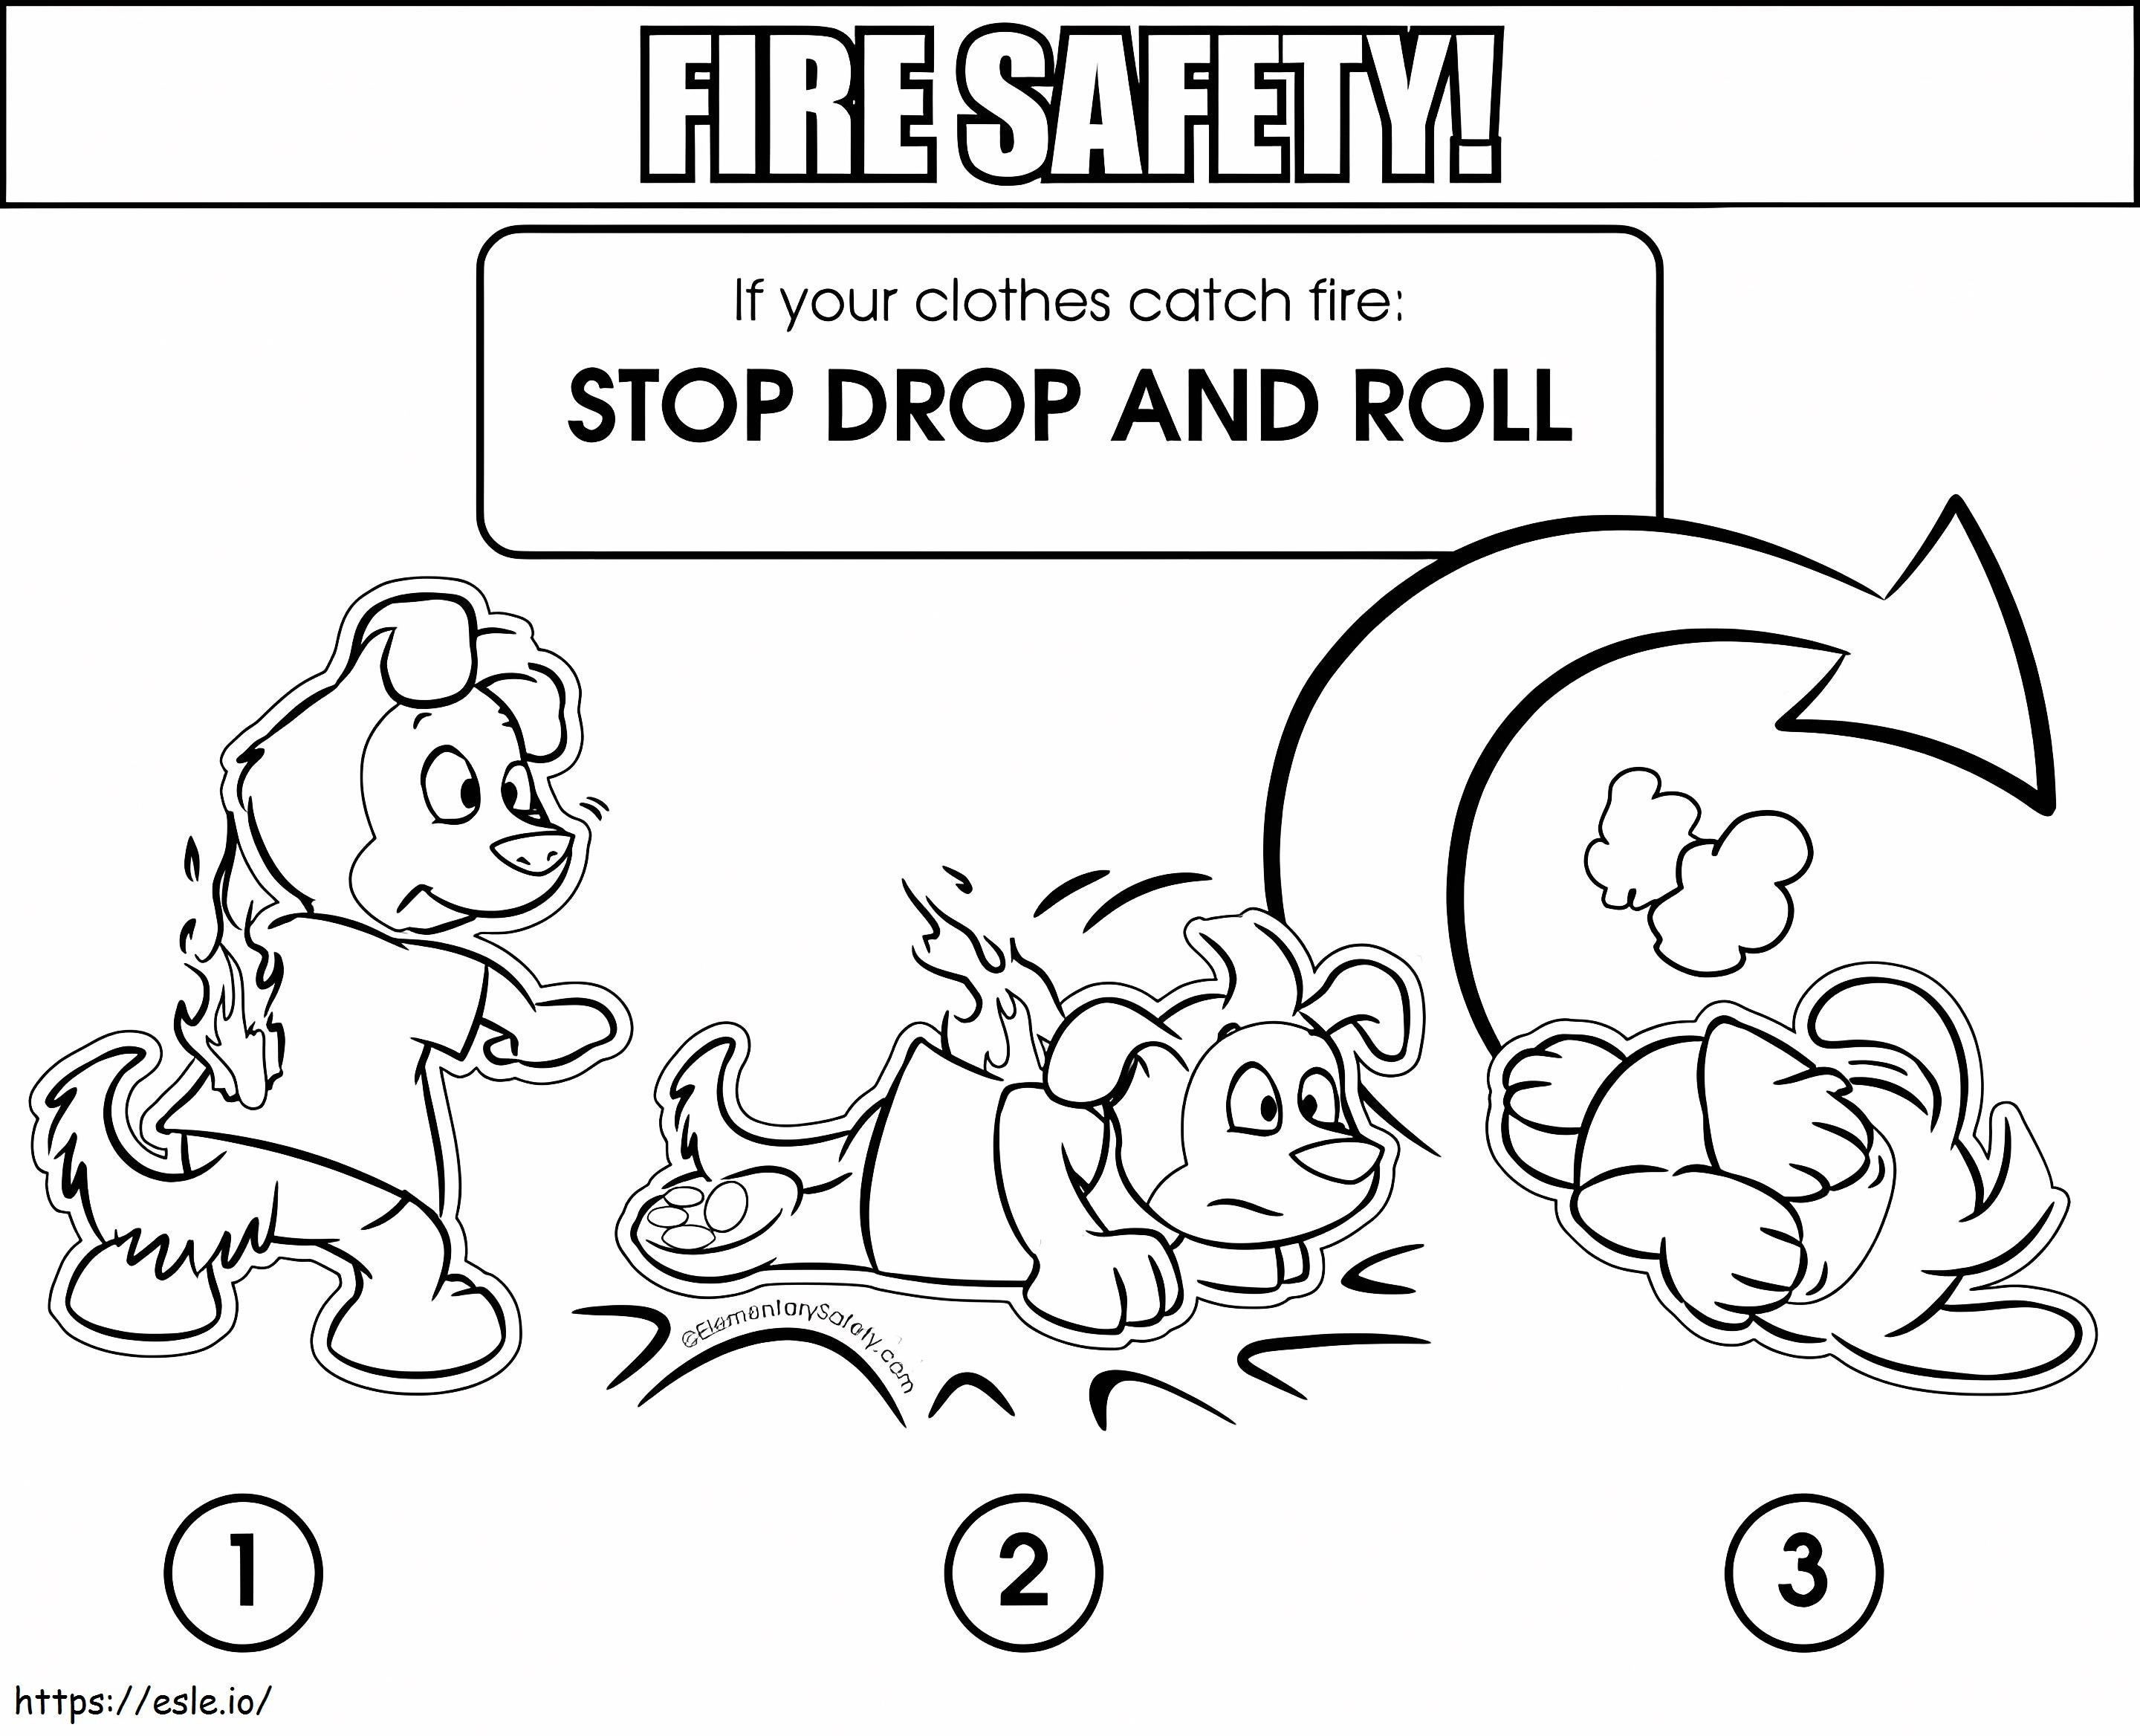 Seguridad contra incendios: detener la caída y la rodadura para colorear